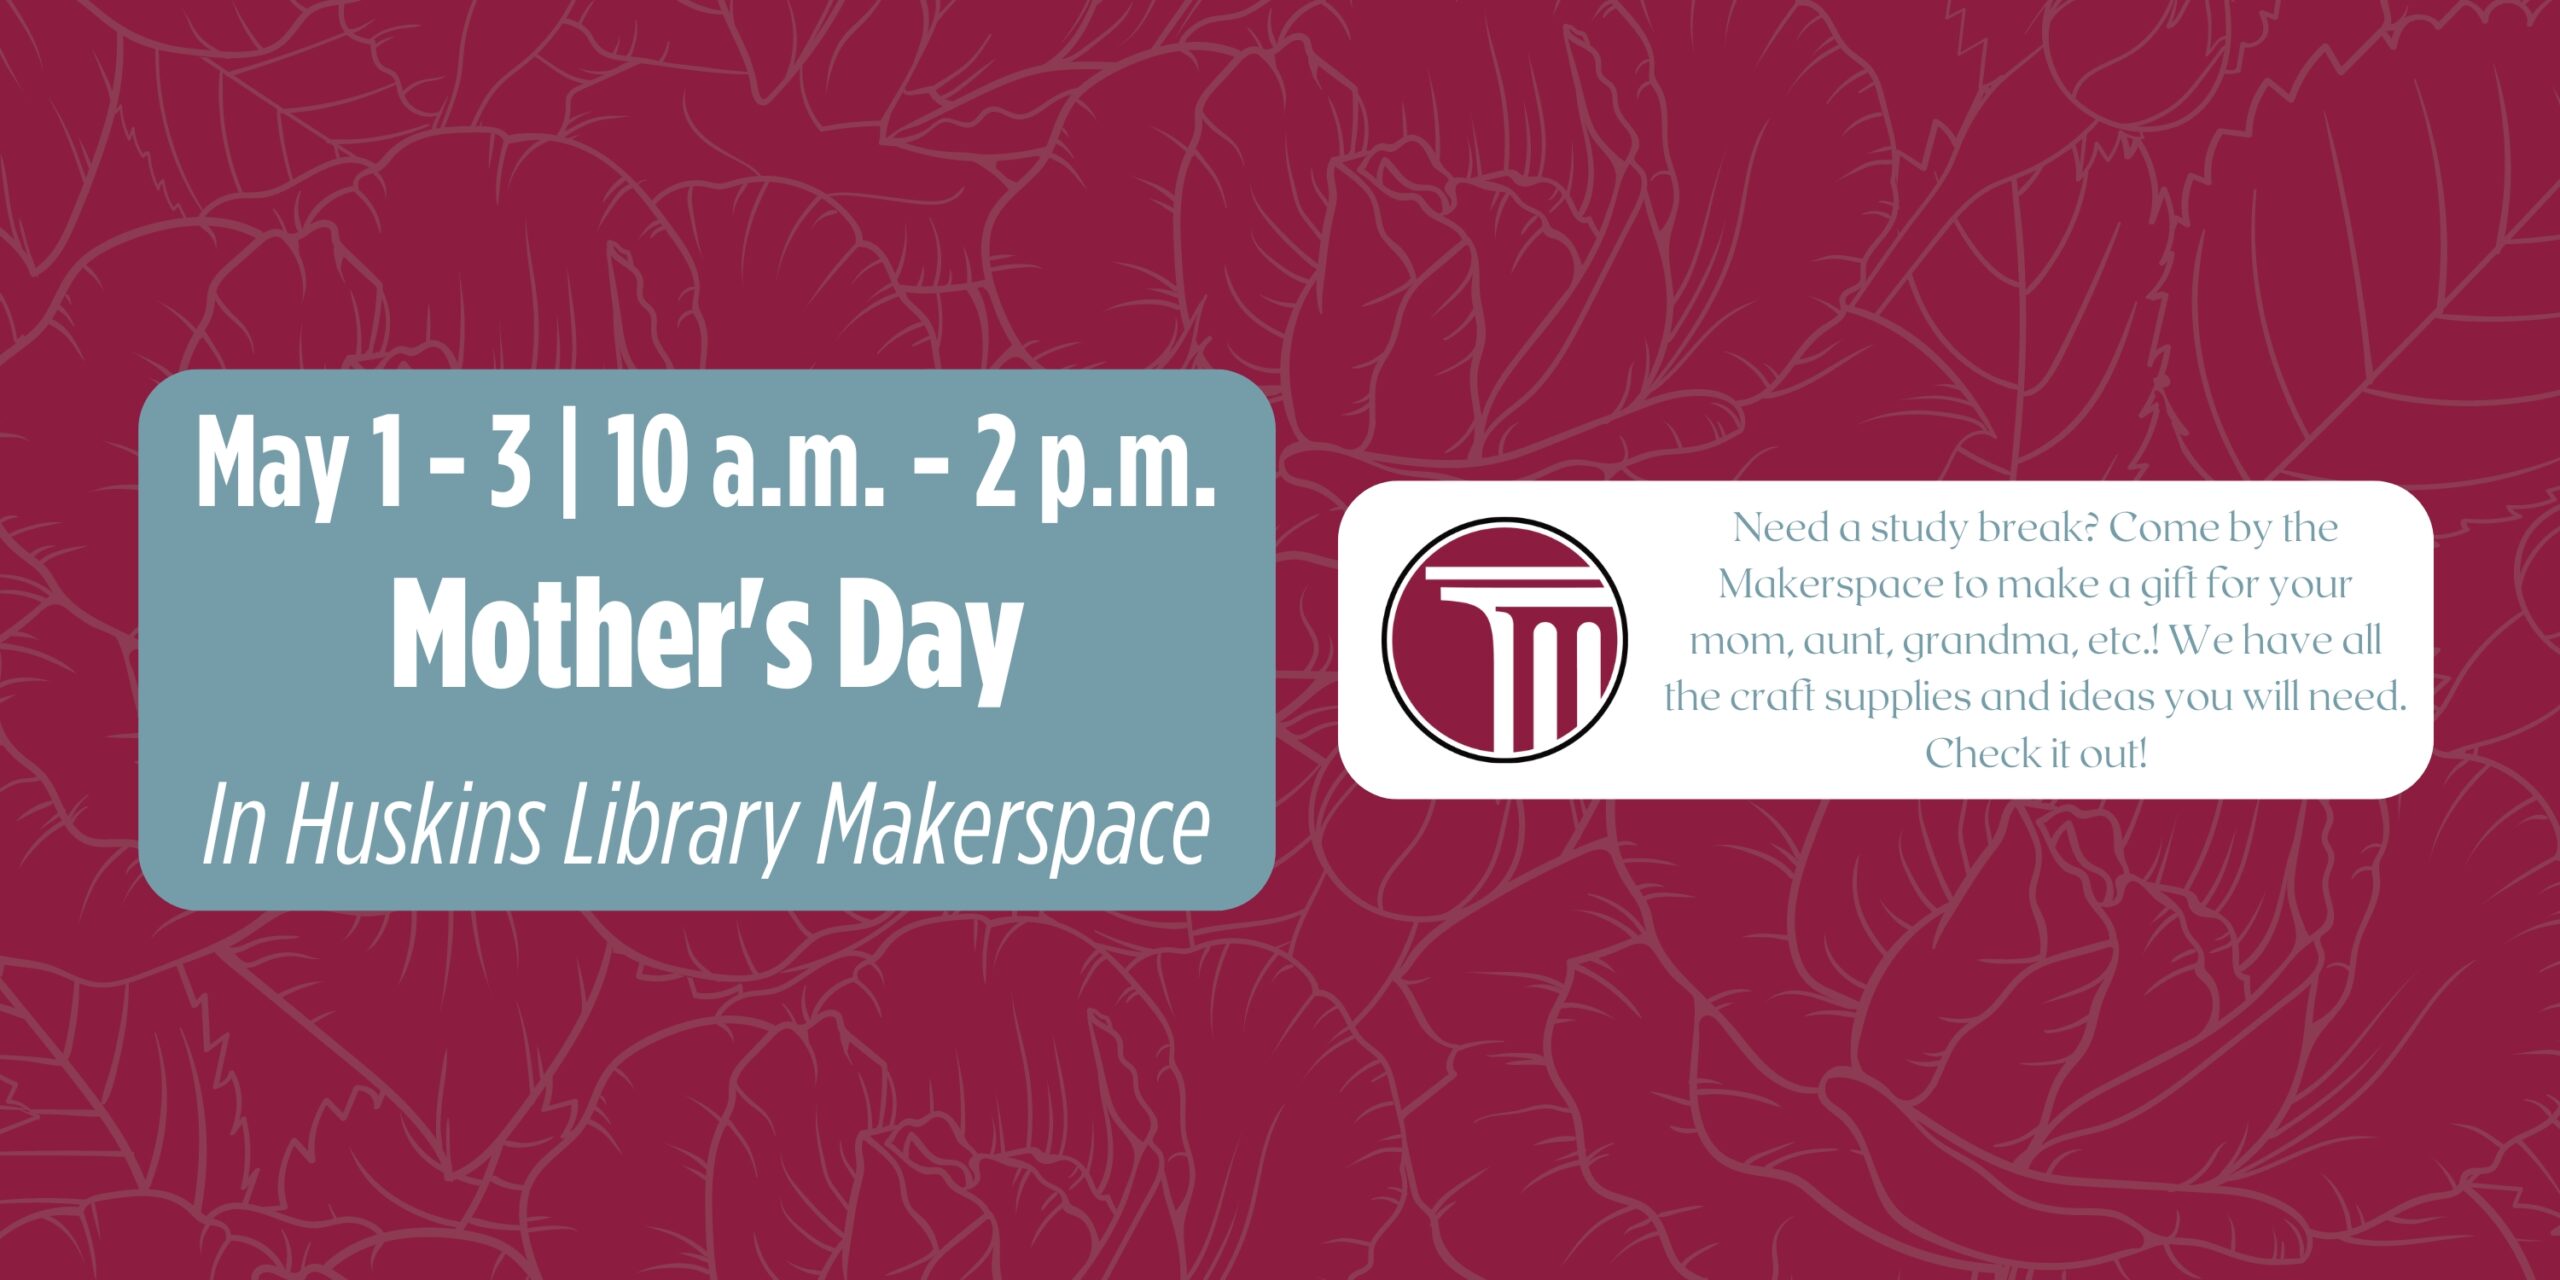 "1-3 Mayıs | 10:2 - XNUMX:XNUMX | Anneler Günü | Huskins Kütüphanesi Makerspace'de | Anneniz, teyzeniz, büyükanneniz vb. için bir hediye yapmak için Makerspace'e gelin! Tüm el işi malzemeleri ve fikirlere sahibiz ihtiyacınız olacak!".